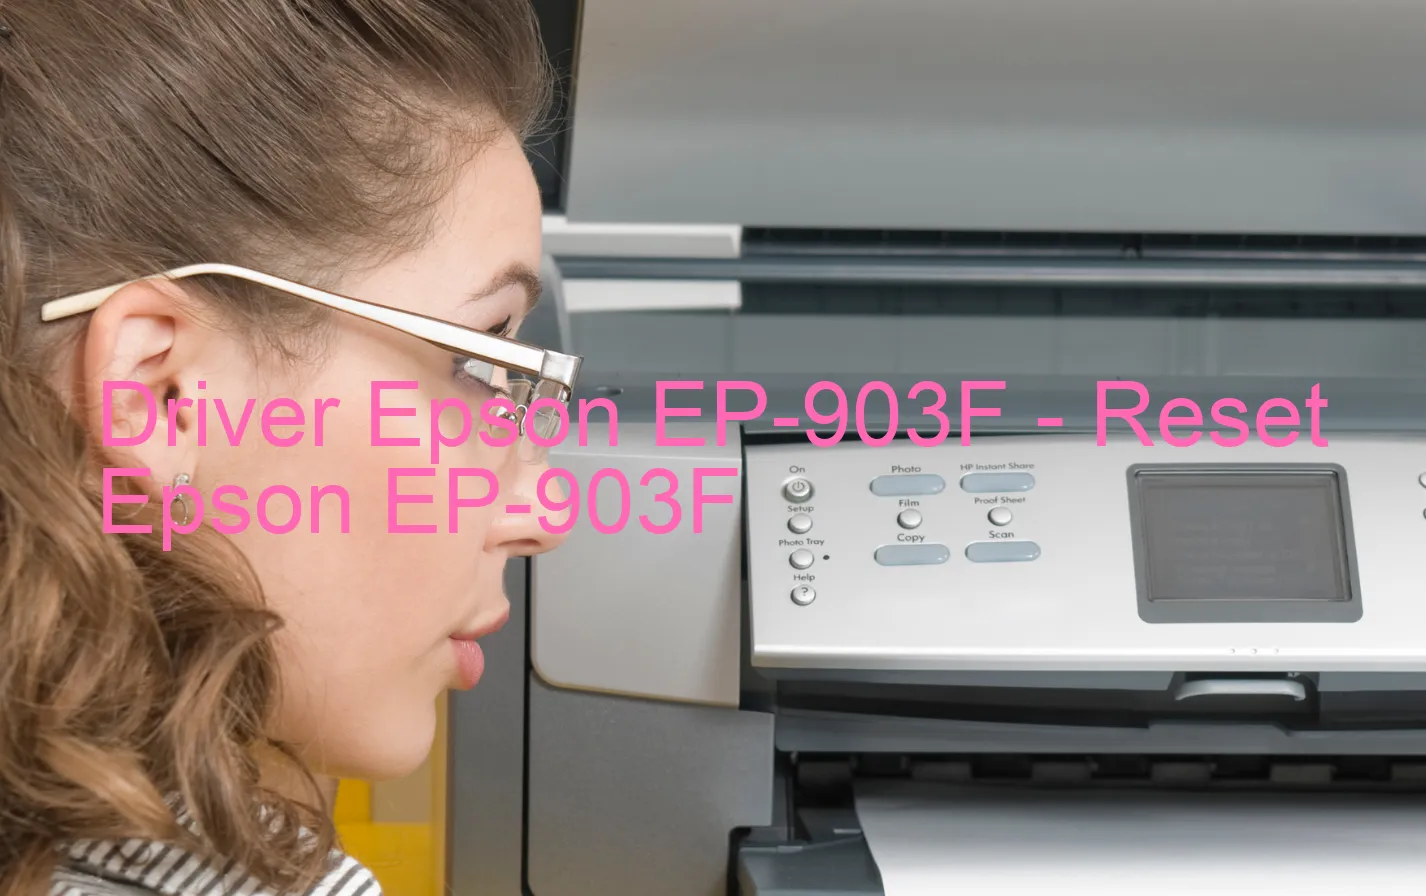 Epson EP-903Fのドライバー、Epson EP-903Fのリセットソフトウェア